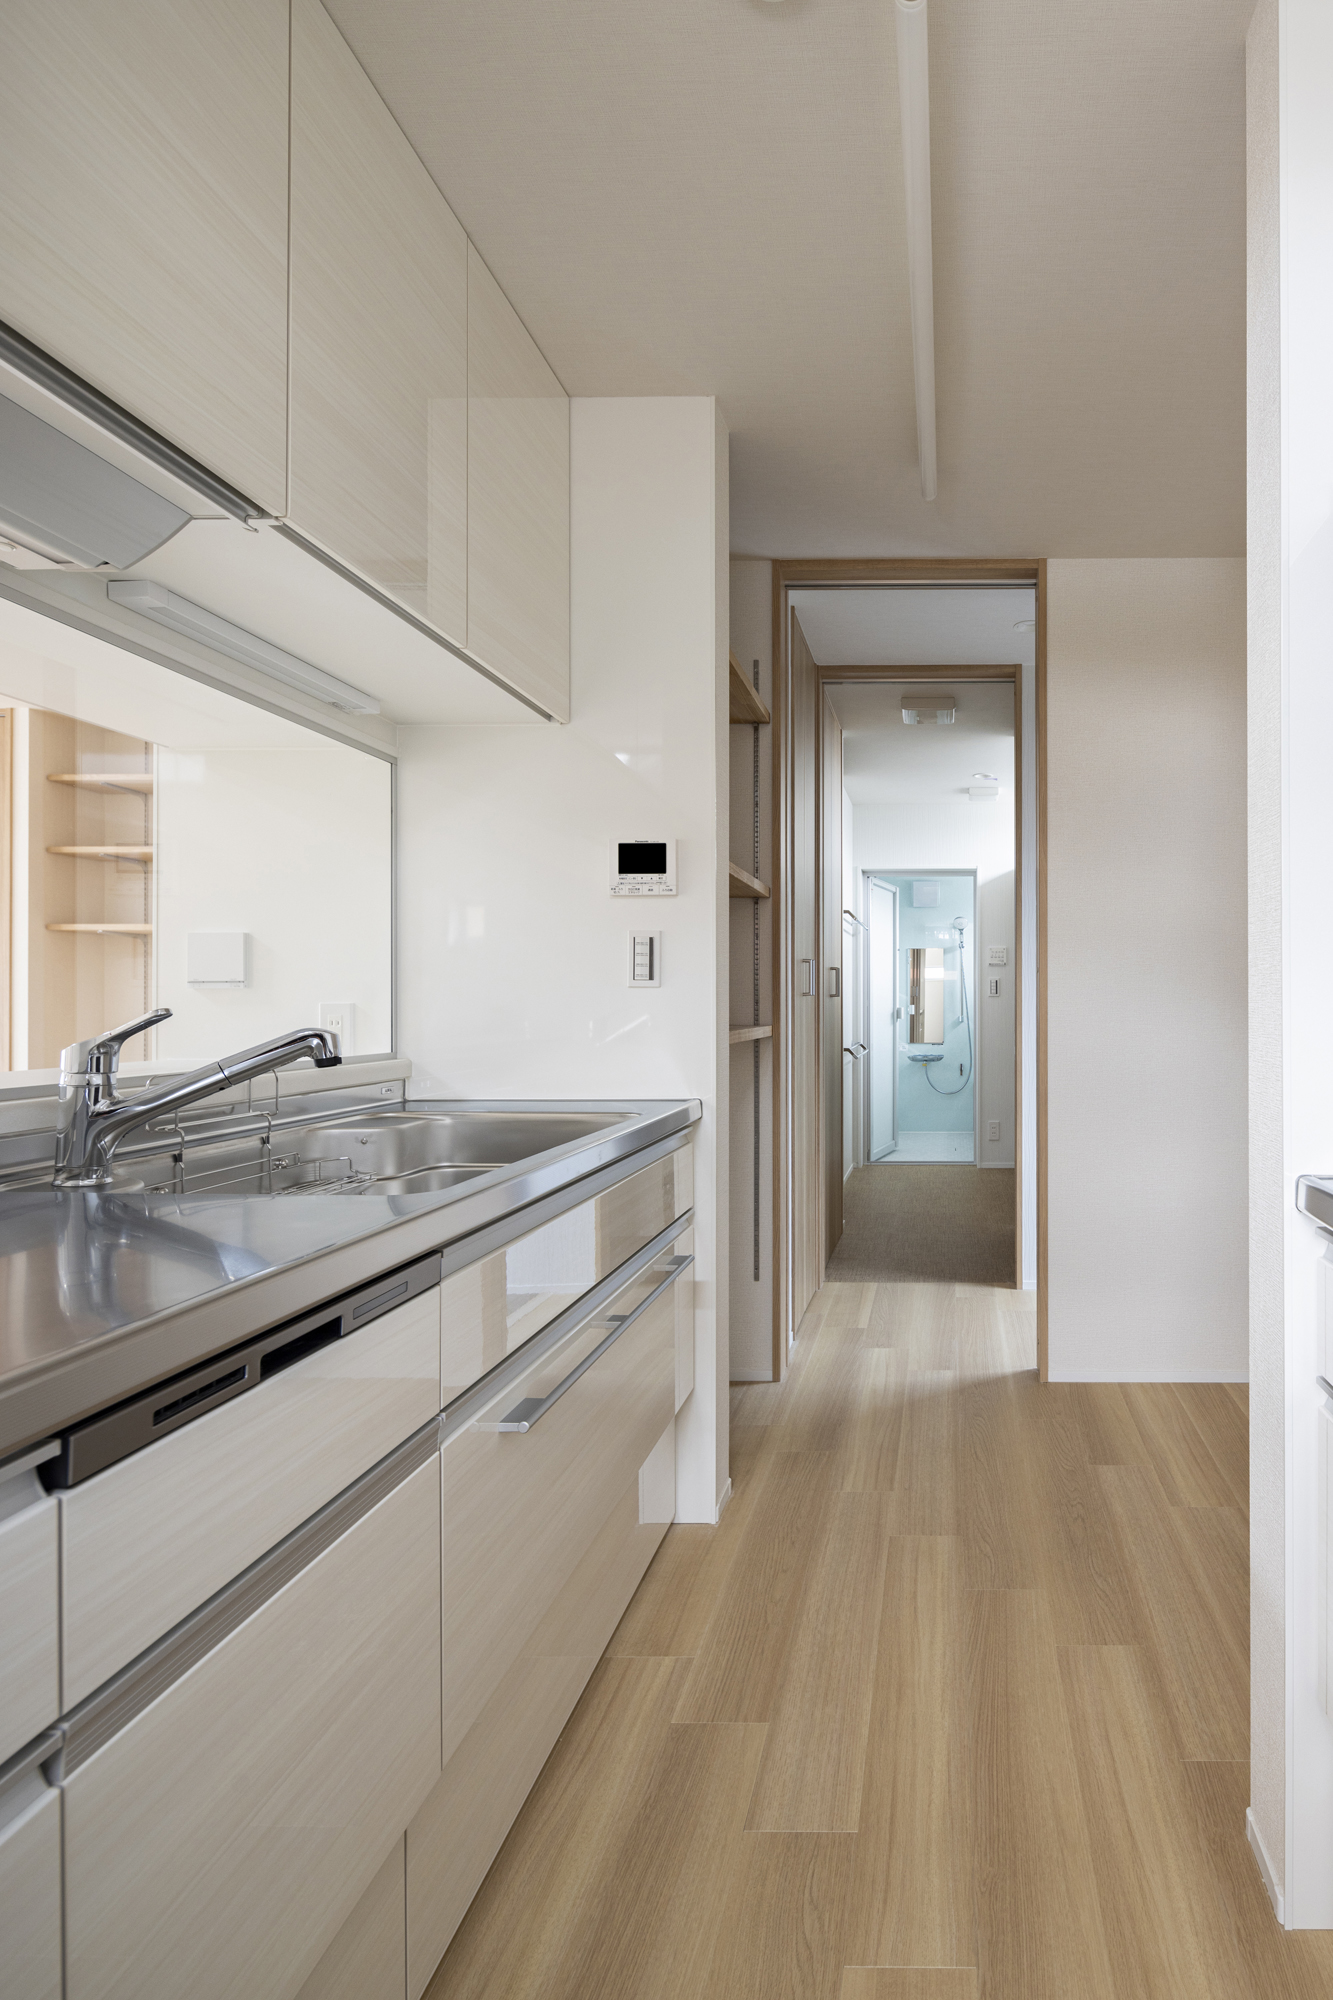 二型キッチンの奥にはパントリーとバスルームがあり、家事動線がシンプル